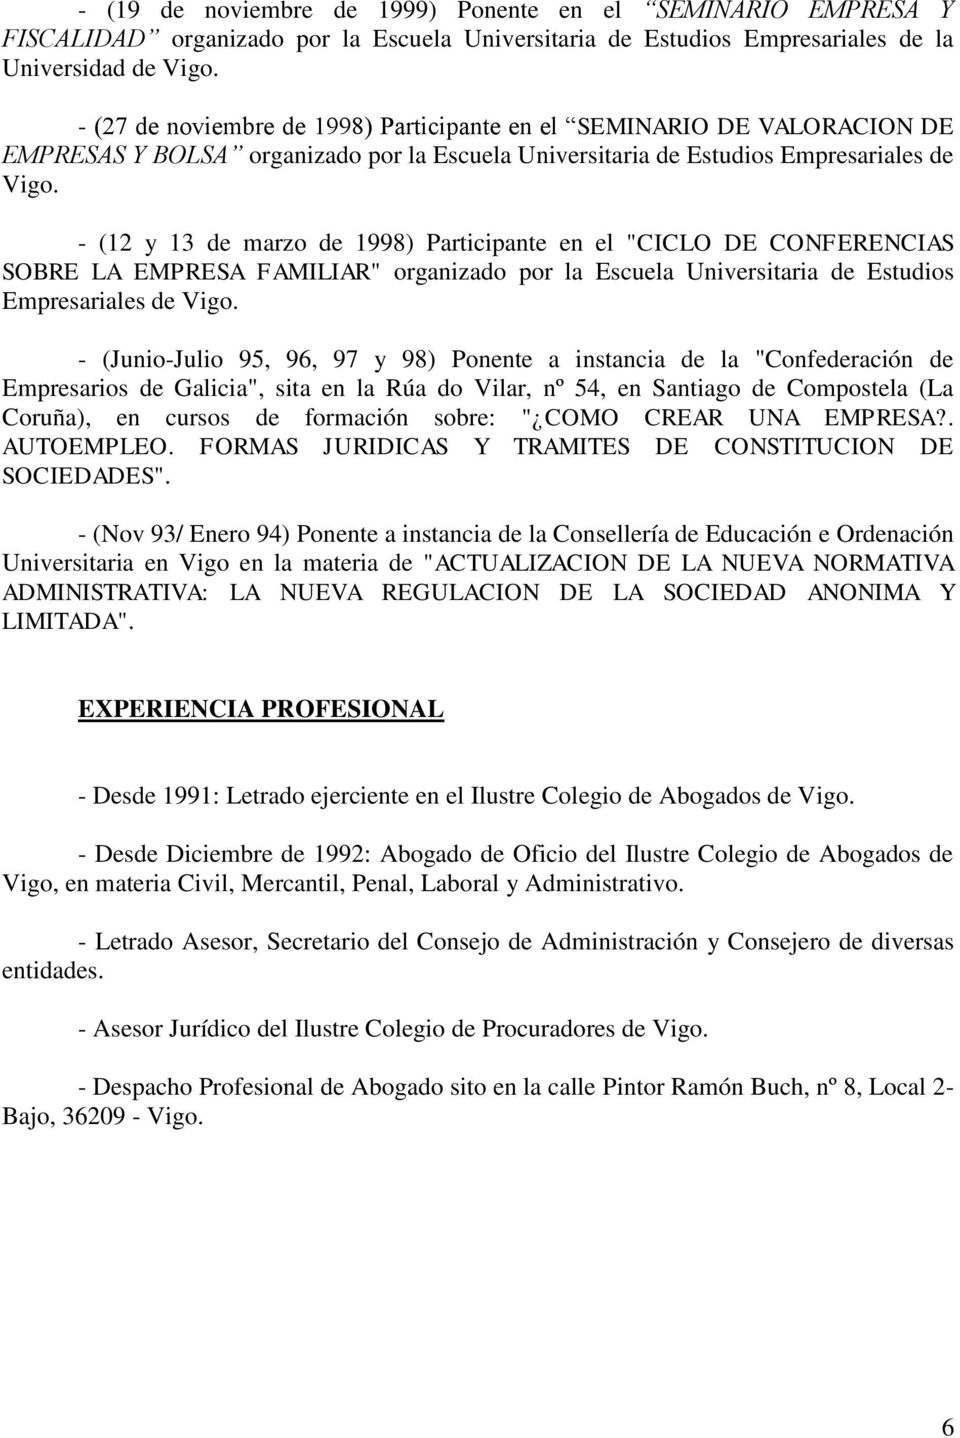 - (12 y 13 de marzo de 1998) Participante en el "CICLO DE CONFERENCIAS SOBRE LA EMPRESA FAMILIAR" organizado por la Escuela Universitaria de Estudios Empresariales de Vigo.